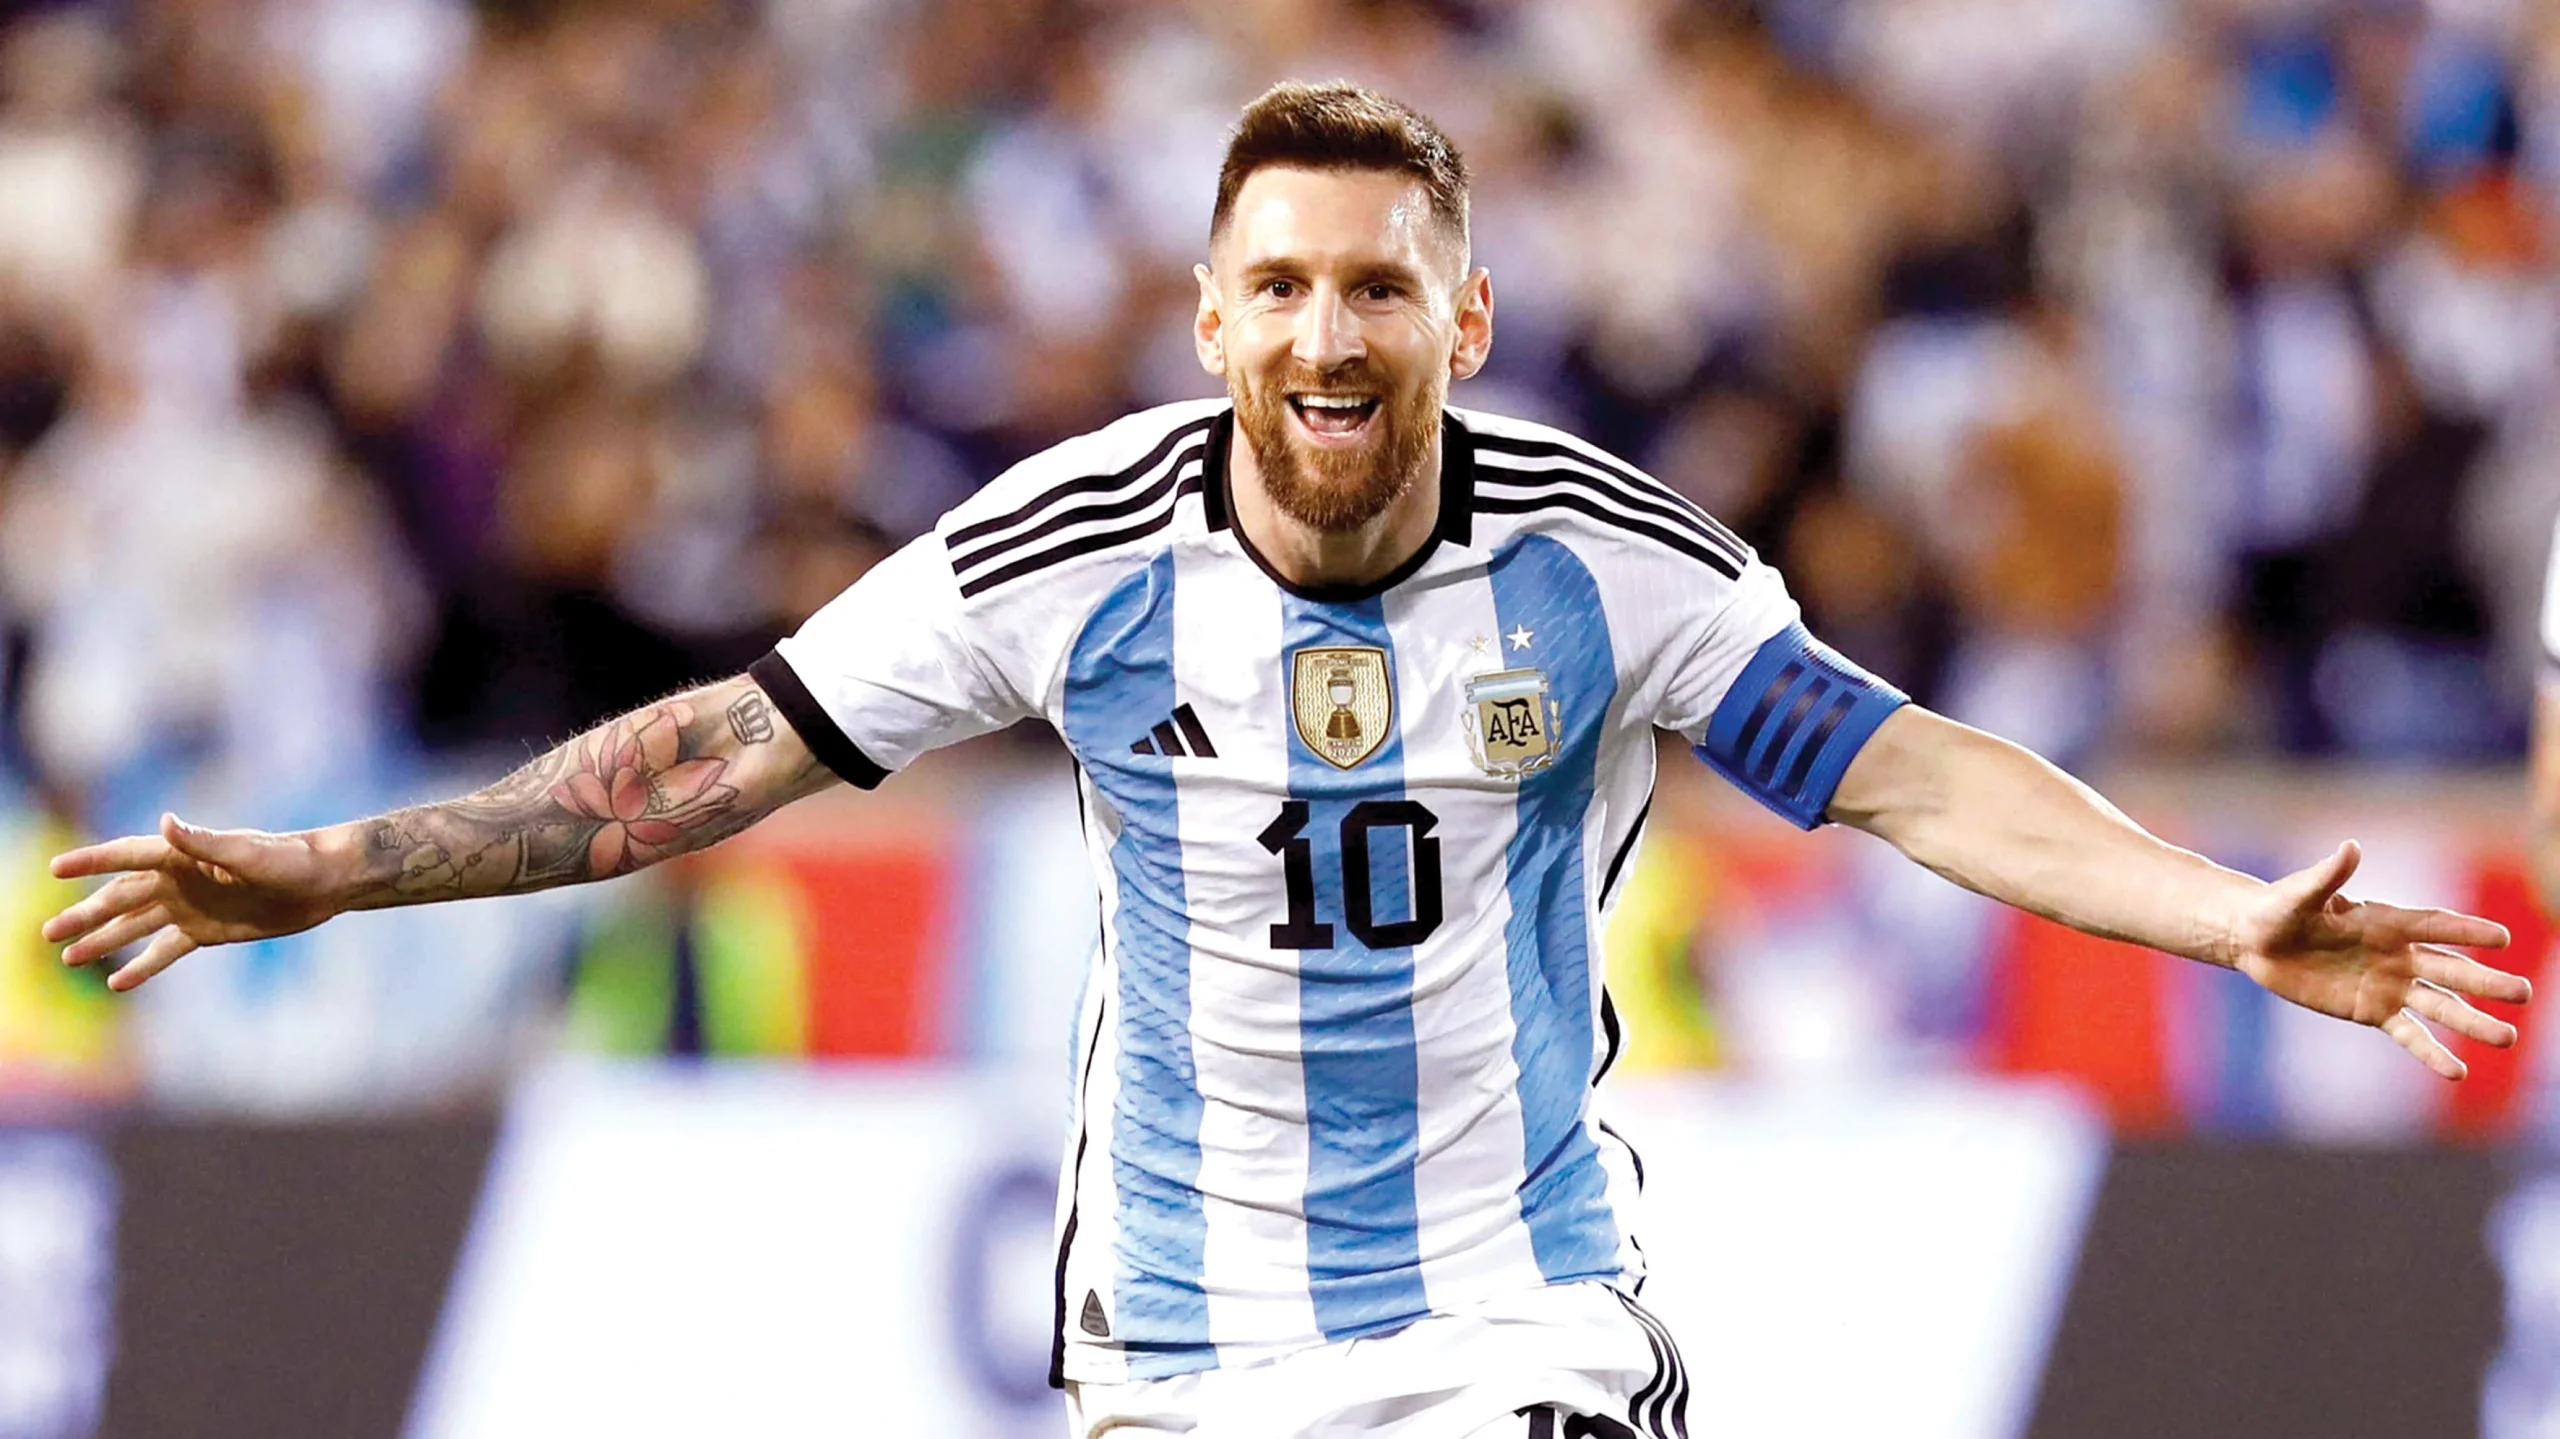 اسم ميسي يهيمن على مواليد الأرجنتين بعد كأس العالم